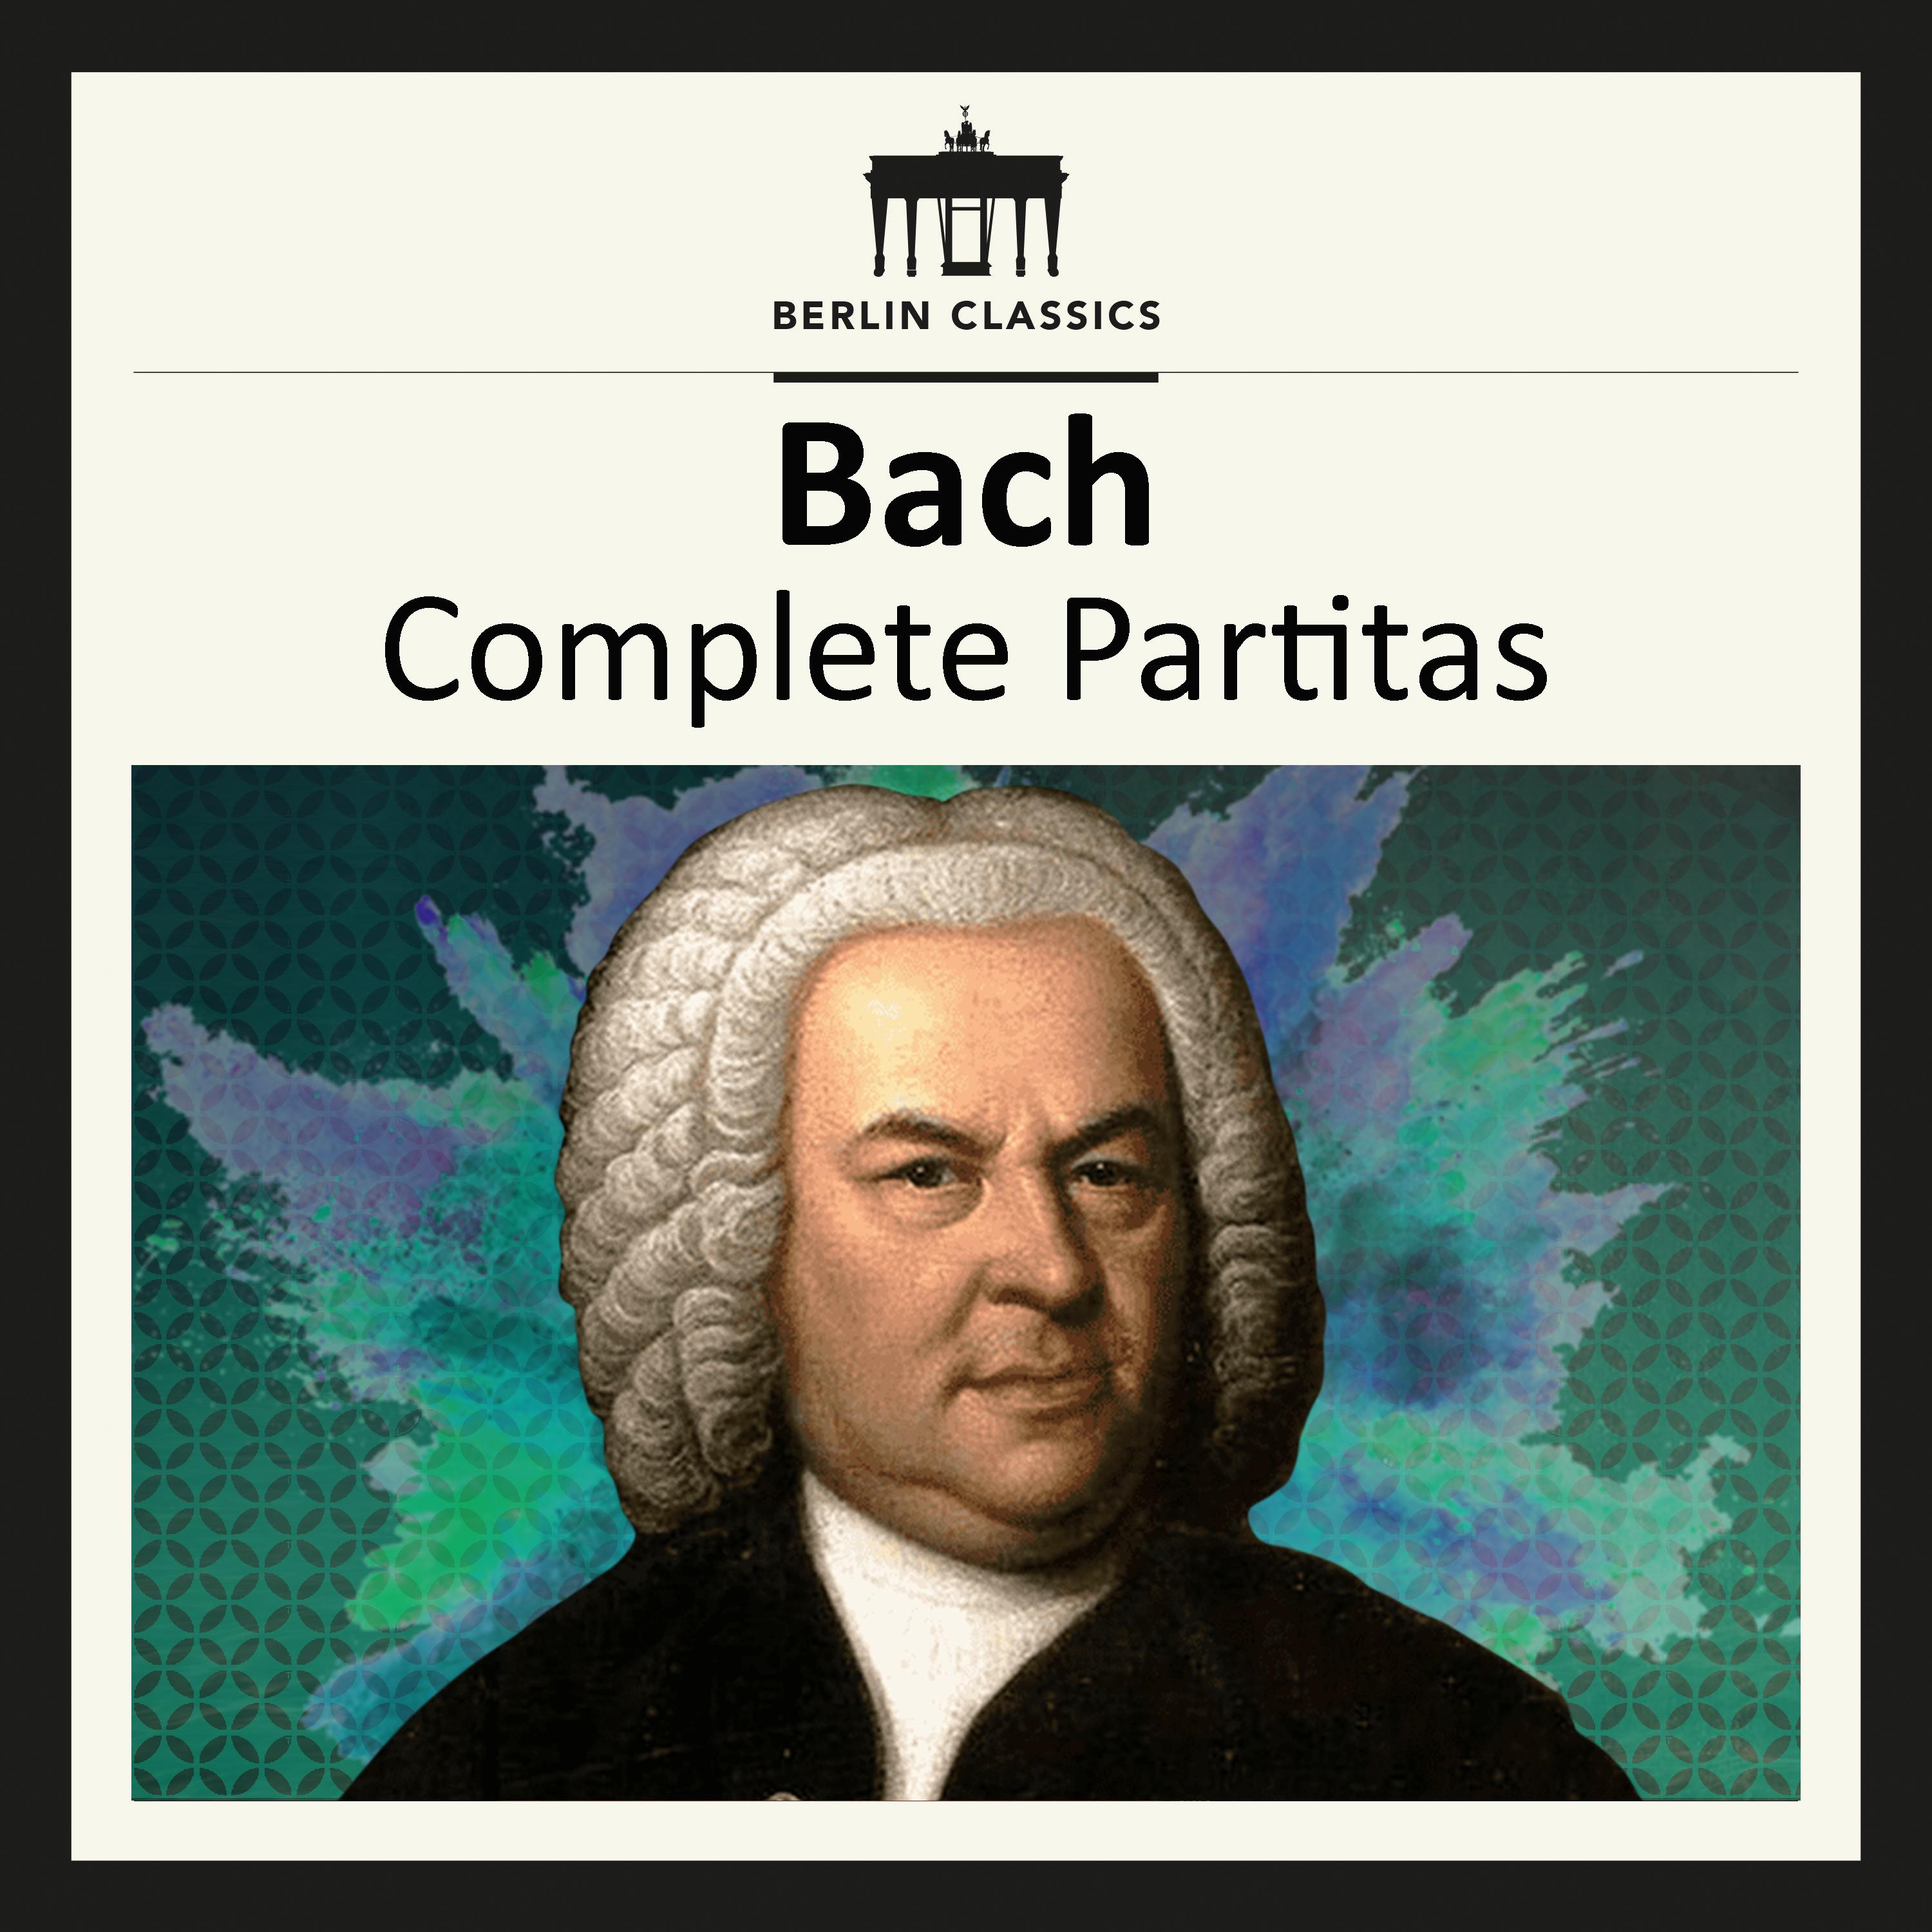 Partita No. 2 in C Minor, BWV 826: VI. Capriccio